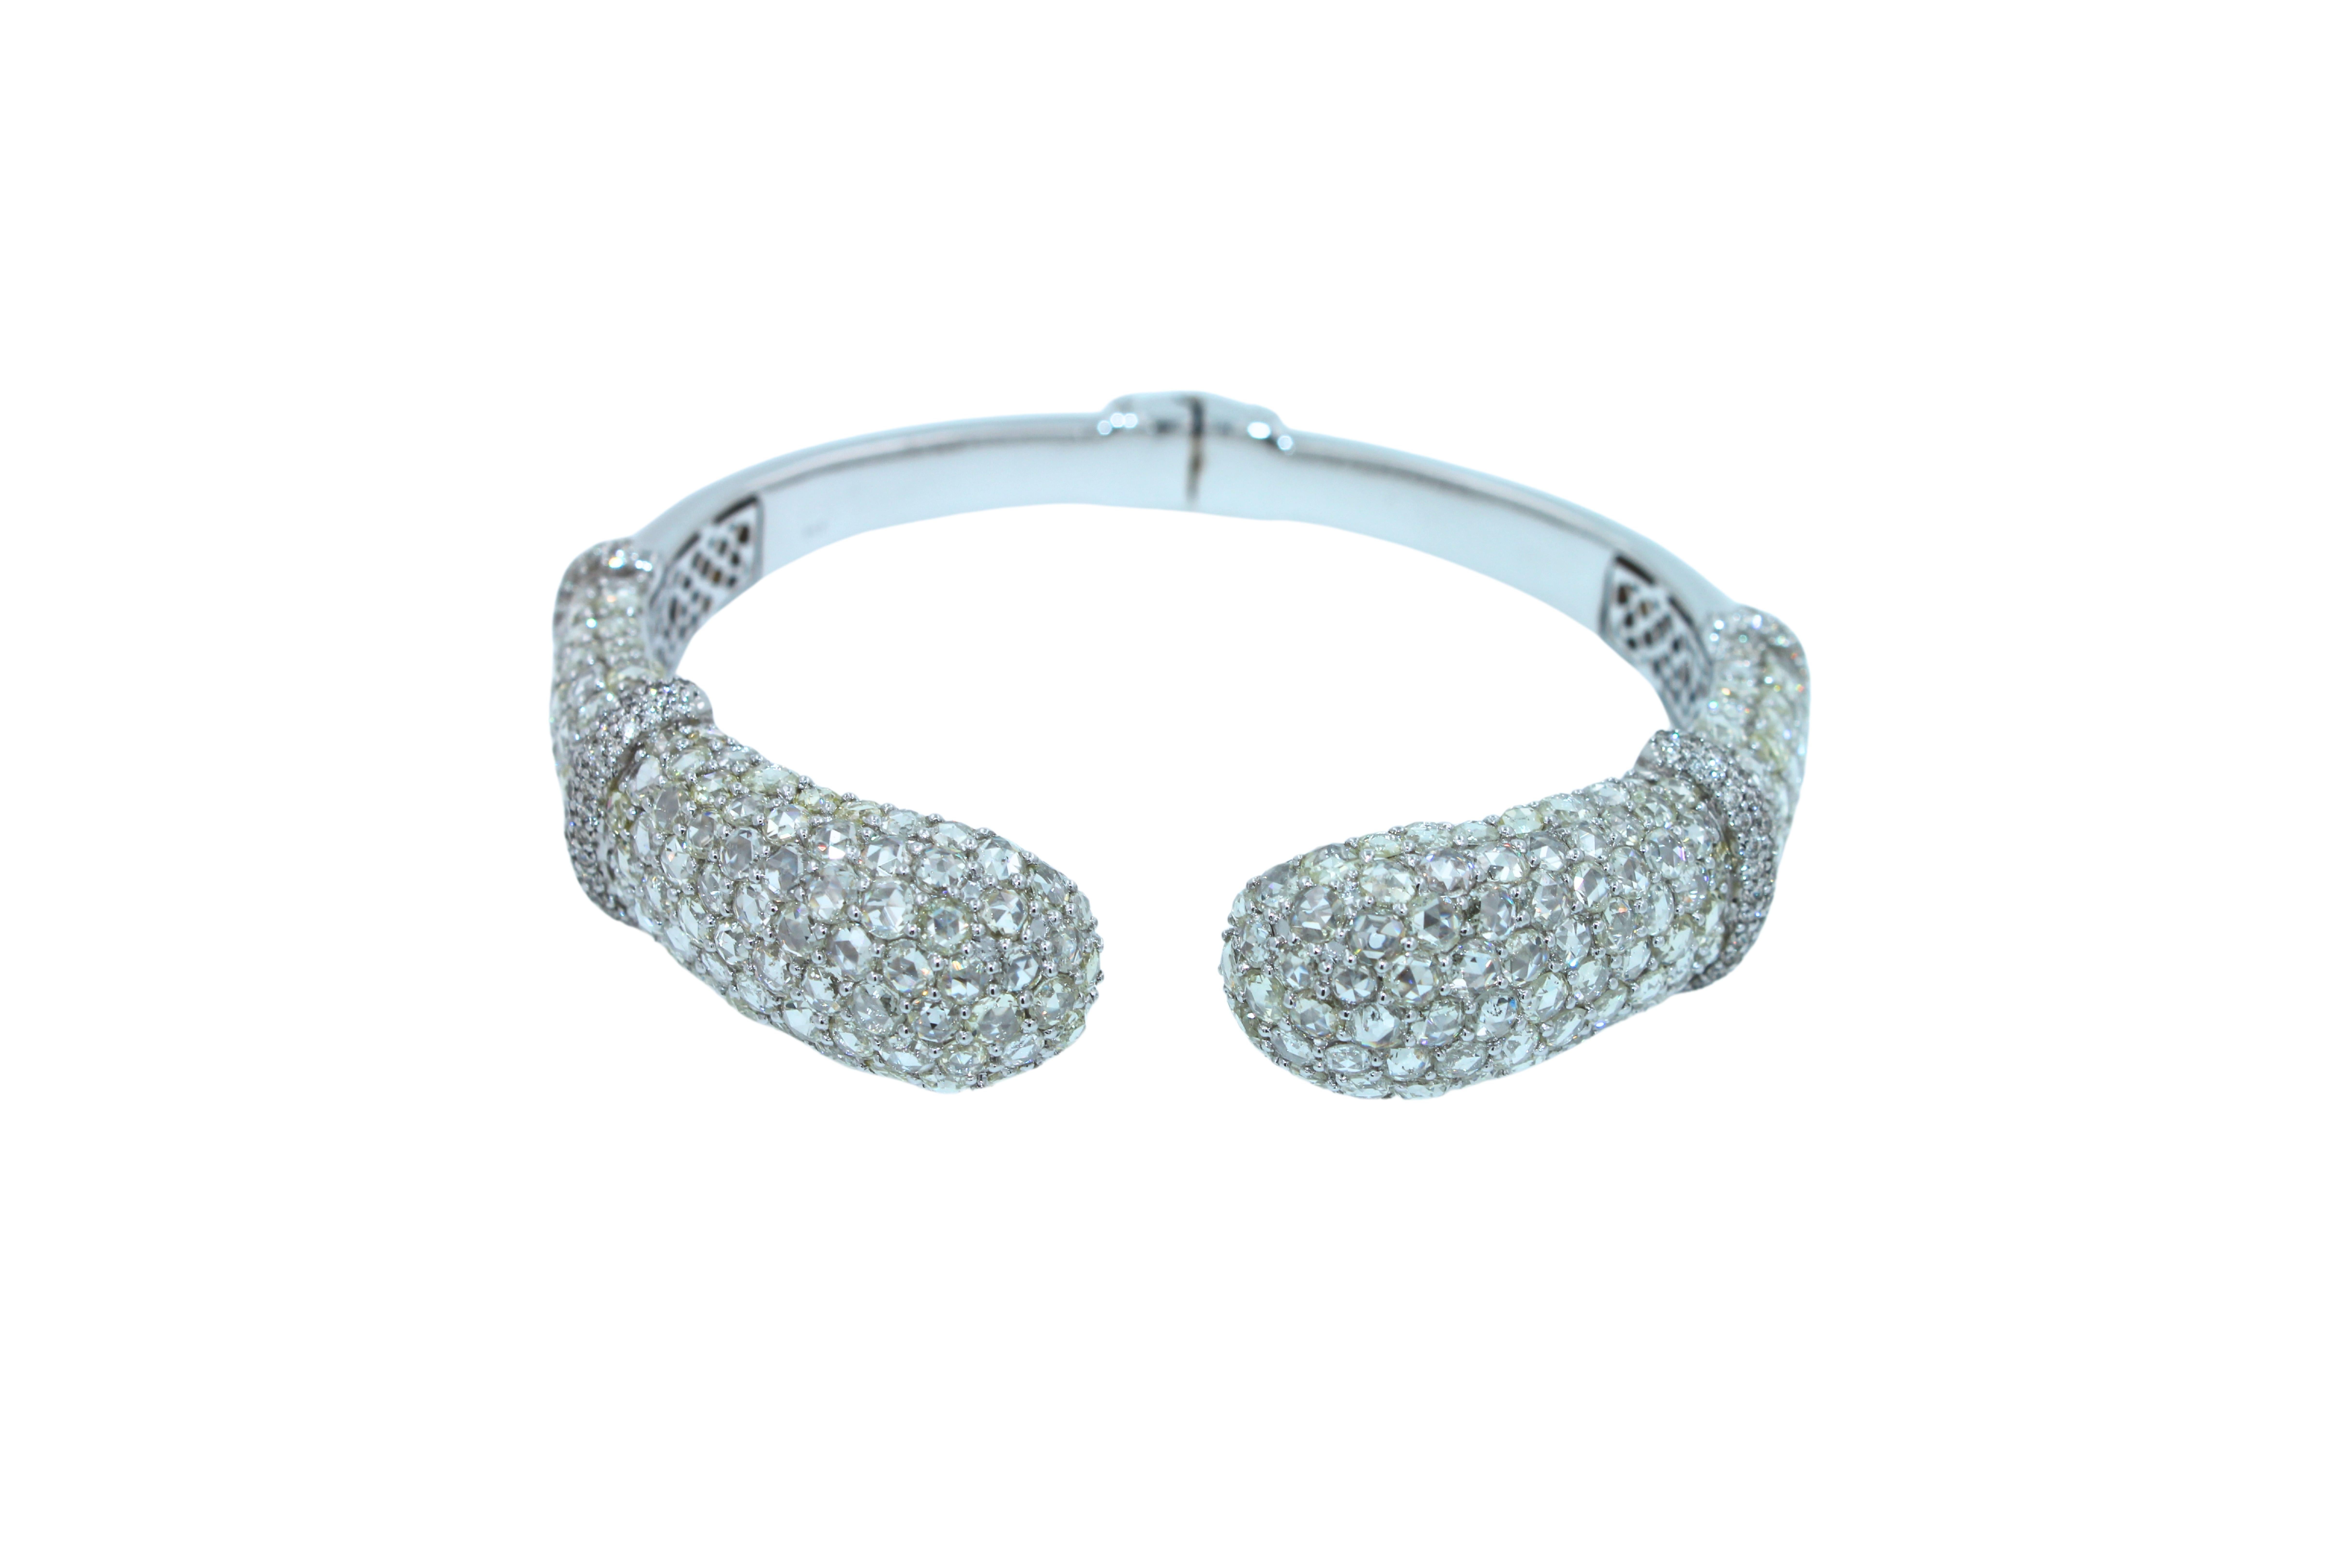 Mixed Cut Diamond Round Shape Brilliant Cut Pave Set Lux 18K White Gold Bangle Bracelet For Sale